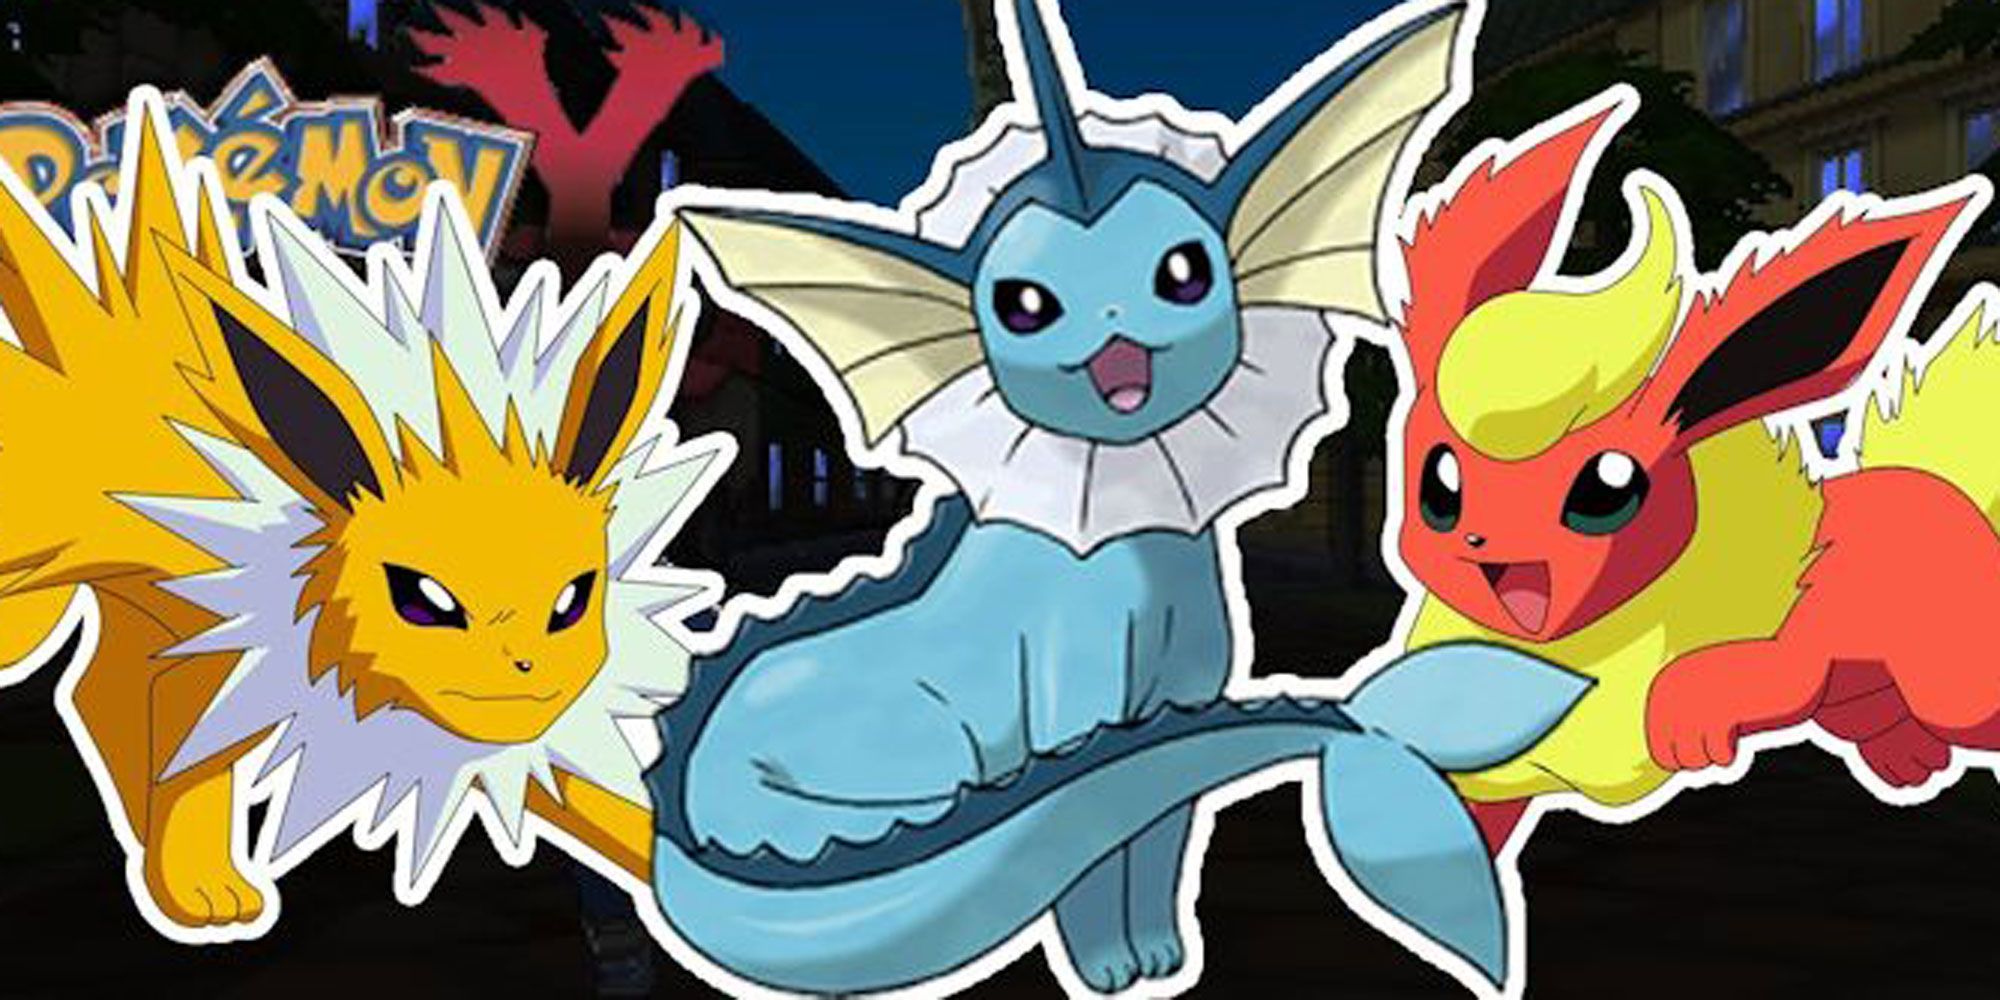 Pokémon Go hack: How to evolve Eevee into Vaporeon, Flareon